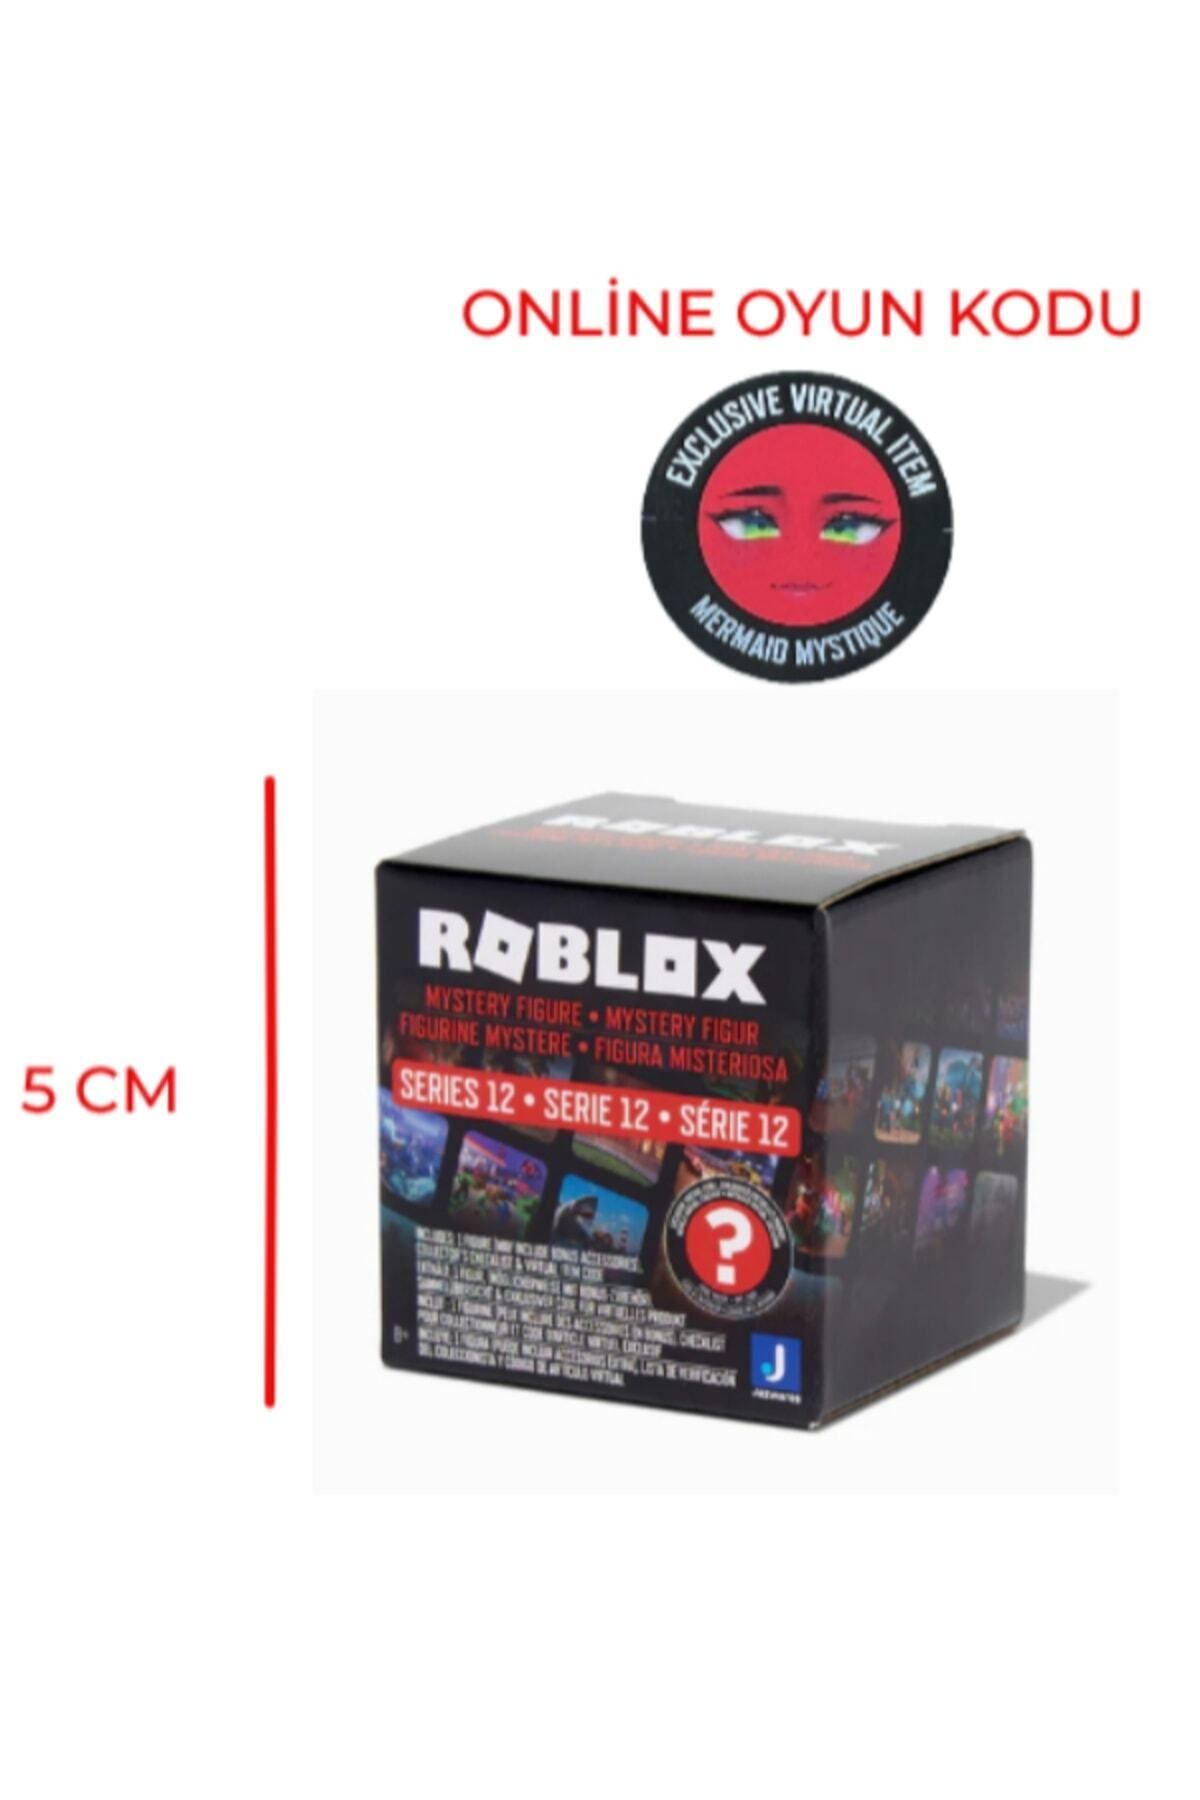 Roblox Online Oyun Kodlu Sürpriz Figür Paketi Seri 12 ( 1 Adet )